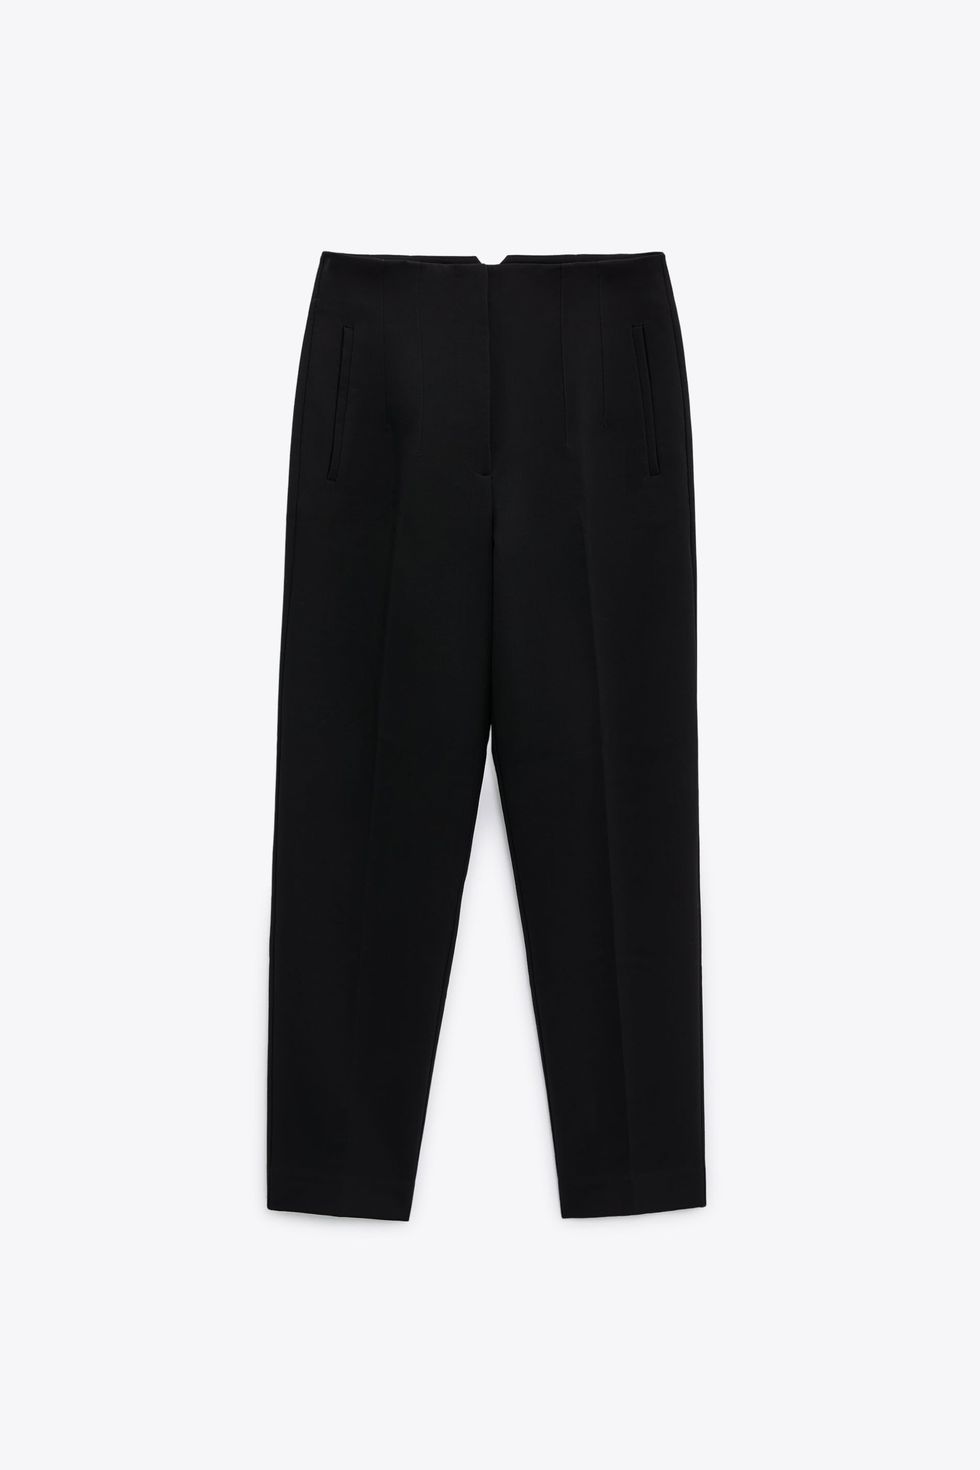 Pantalón pinzas tapered - Negro - Kiabi - 15.00€